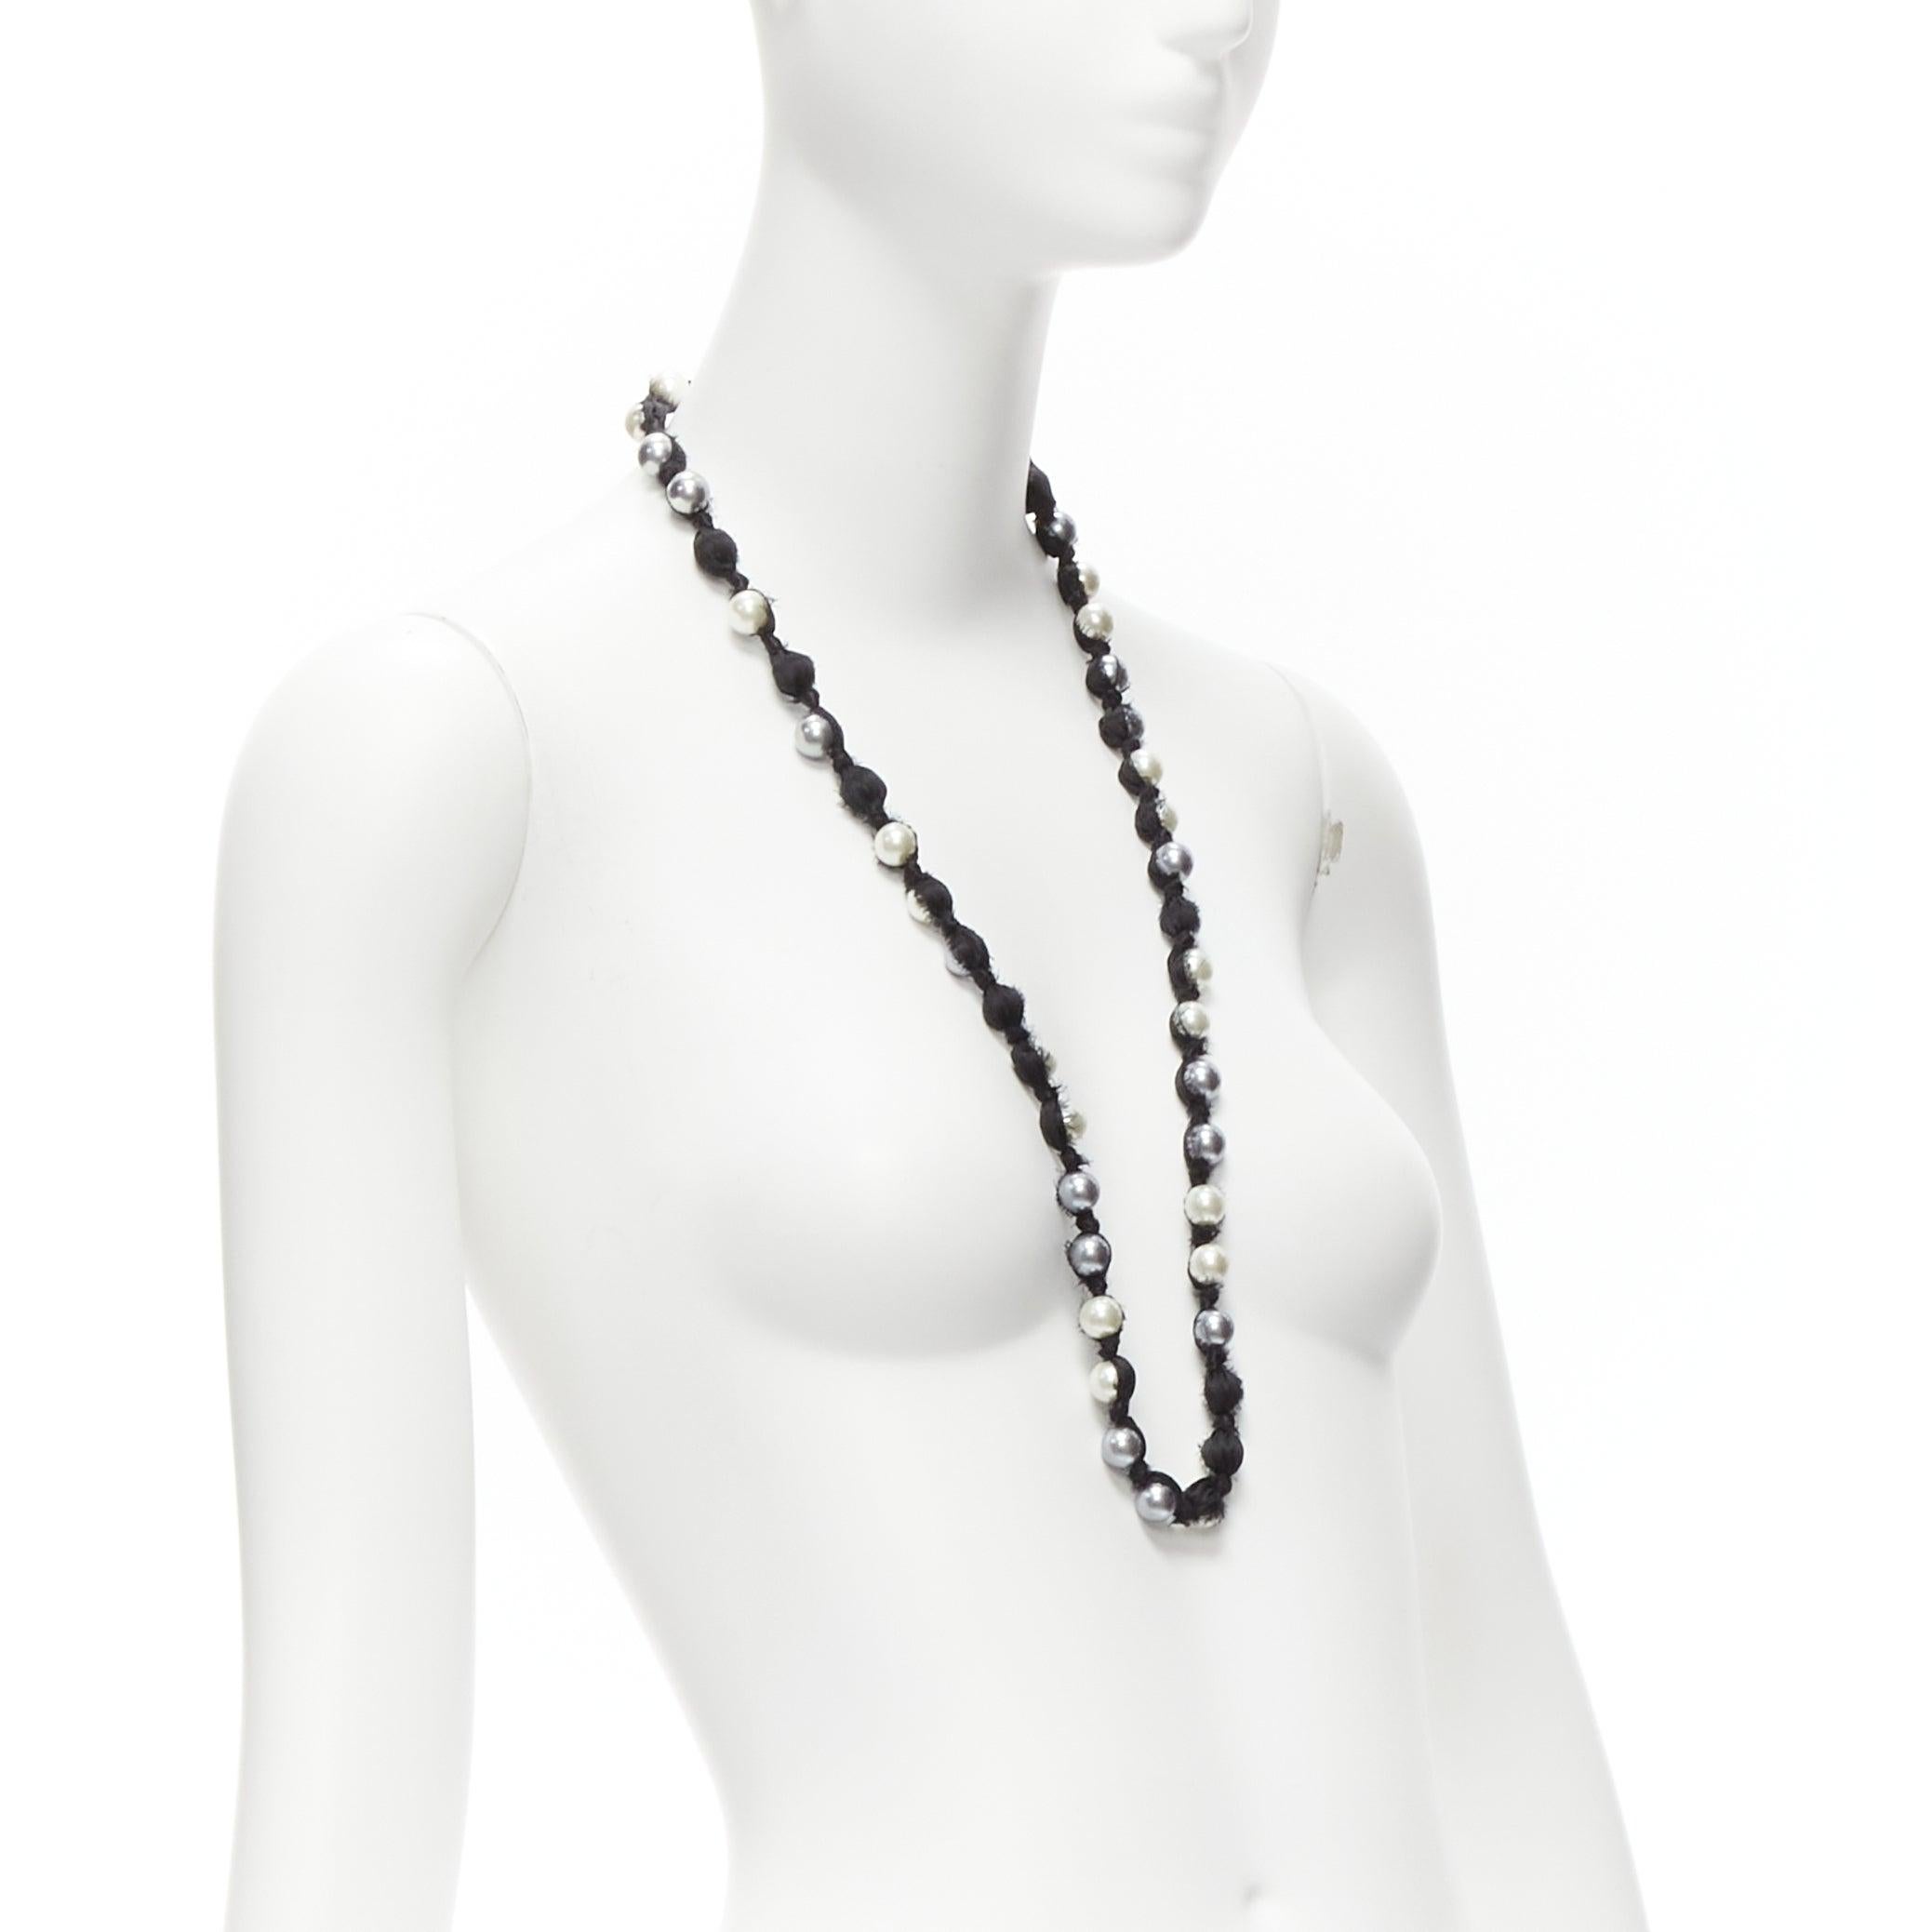 LANVIN ALBER ELBAZ, long collier enveloppé de rubans de soie de perles noires, anthracite crème et noire Excellent état - En vente à Hong Kong, NT